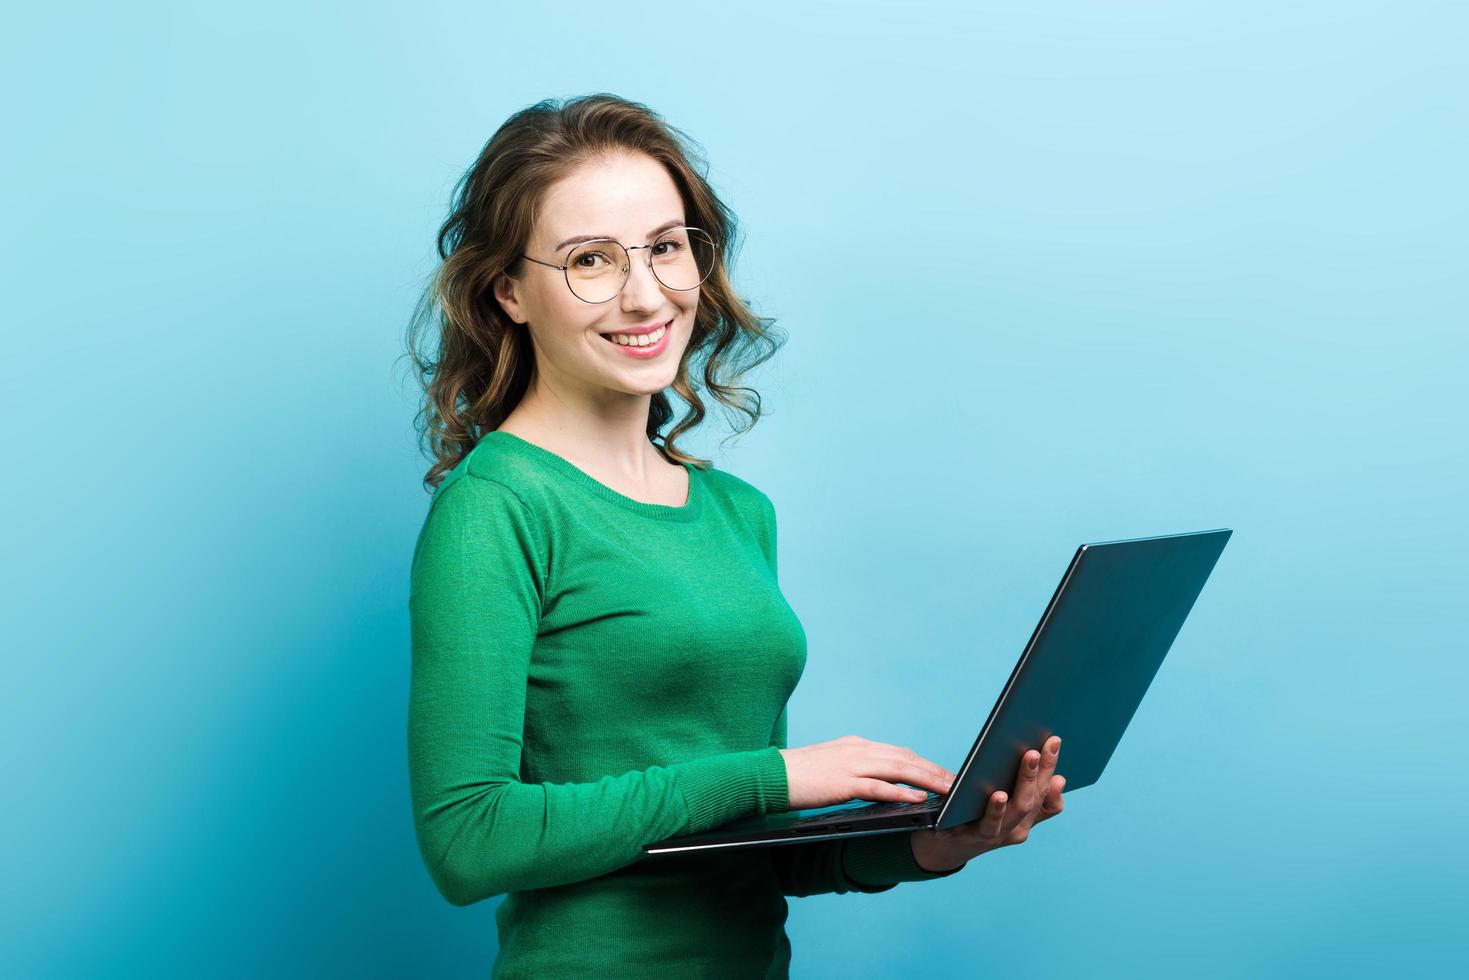 ritratto di una bella donna riccia sorridente con gli occhiali e che indossa un maglione verde con in mano un laptop foto